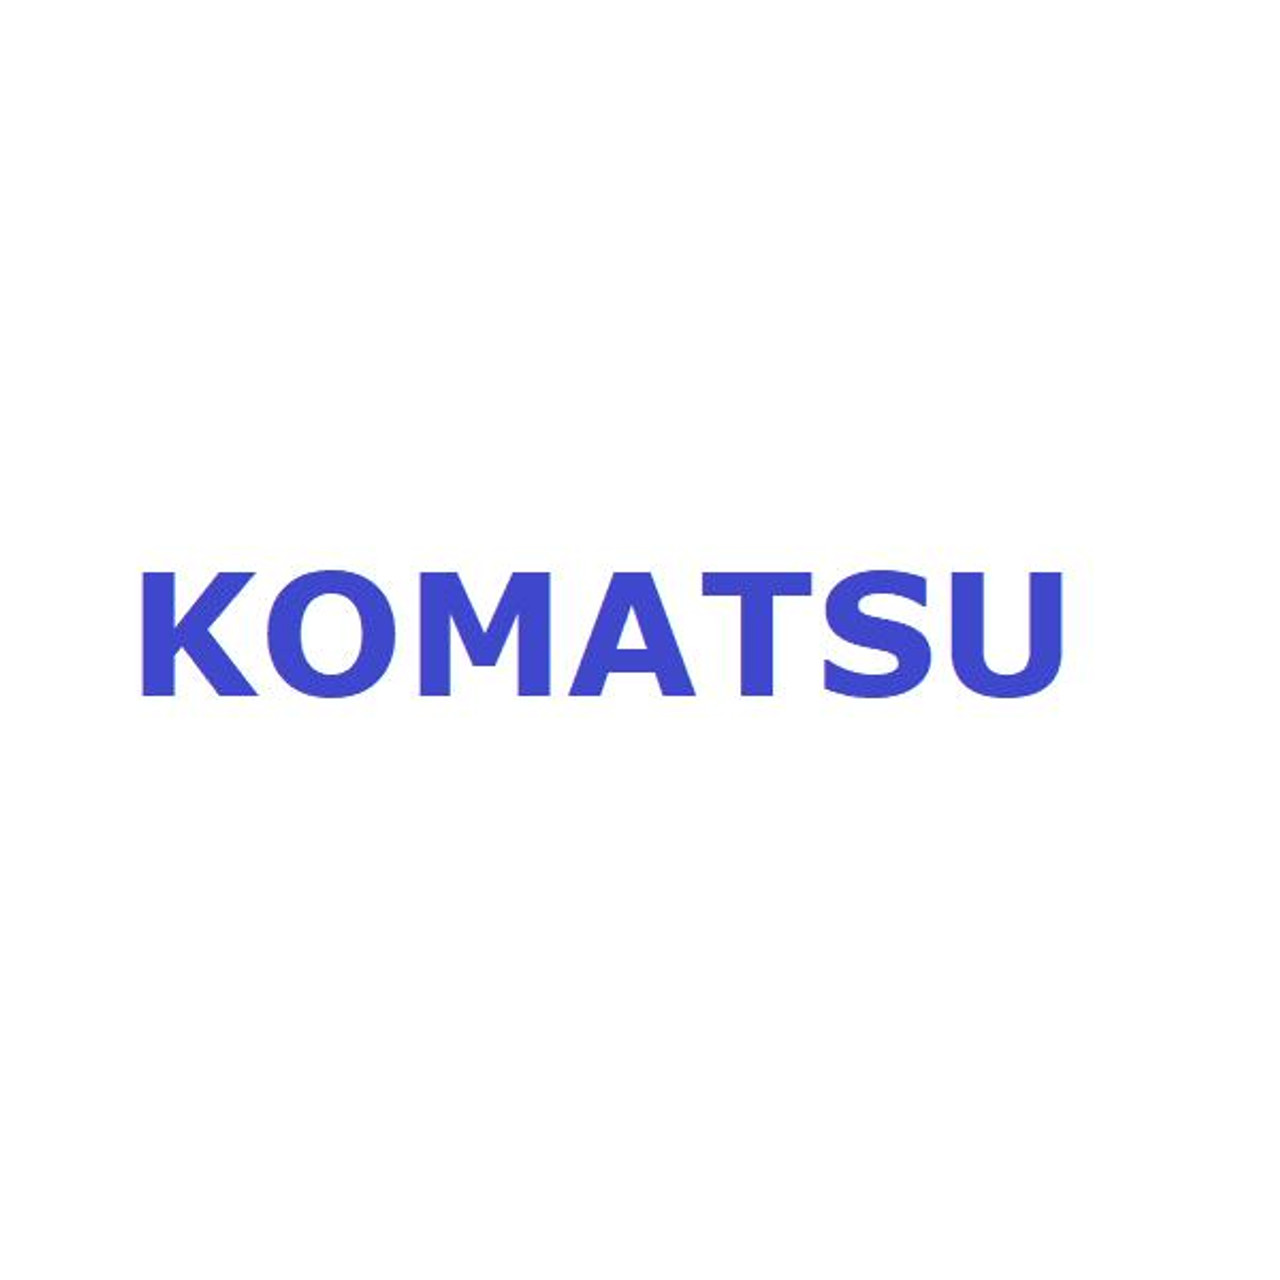 Komatsu Seal # 878000388 Telescopic Arm fits WB140-2, WB150-2